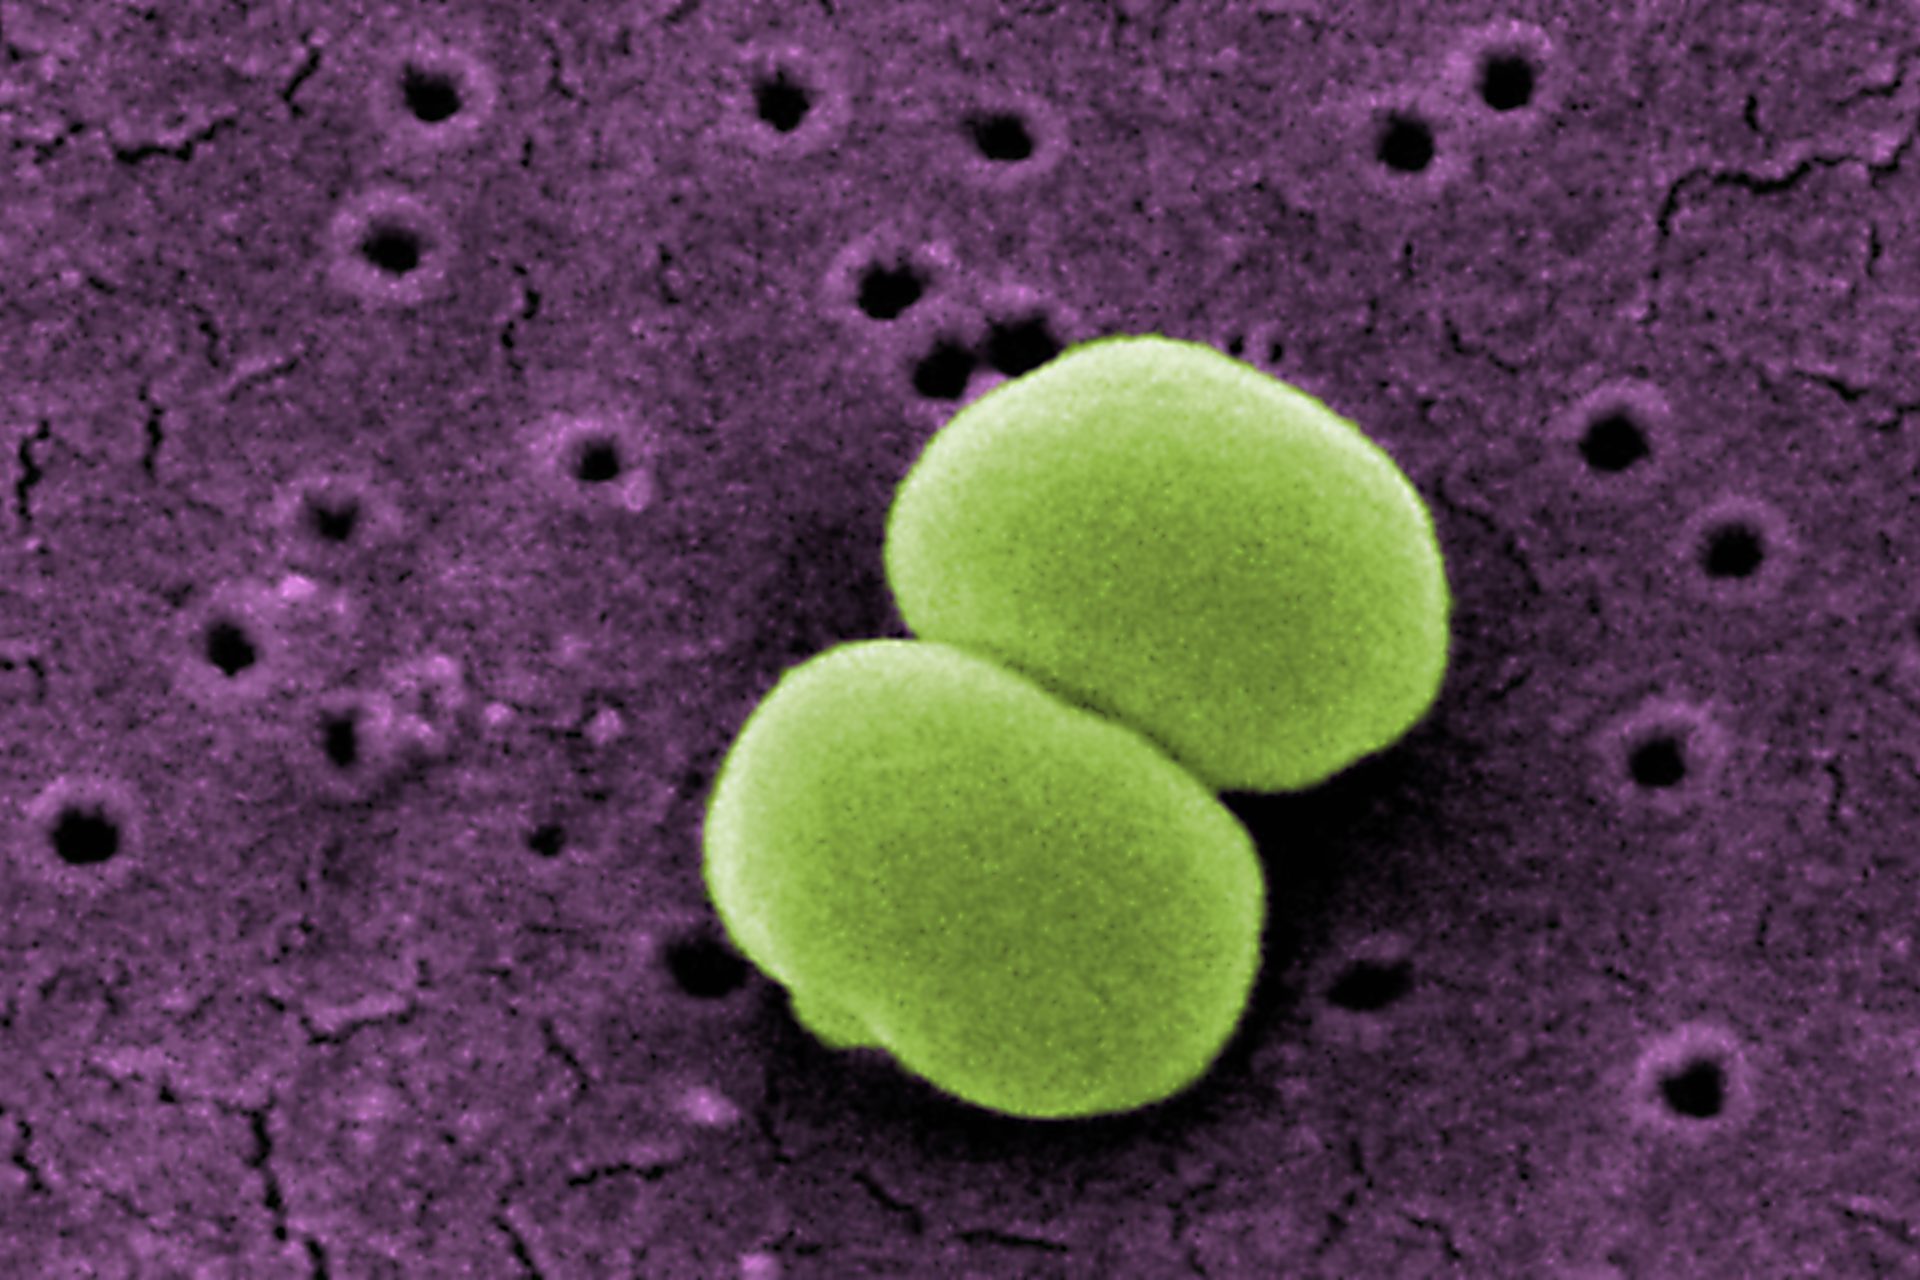 Le staphylococcus epidermidis dégage lui aussi une forte odeur